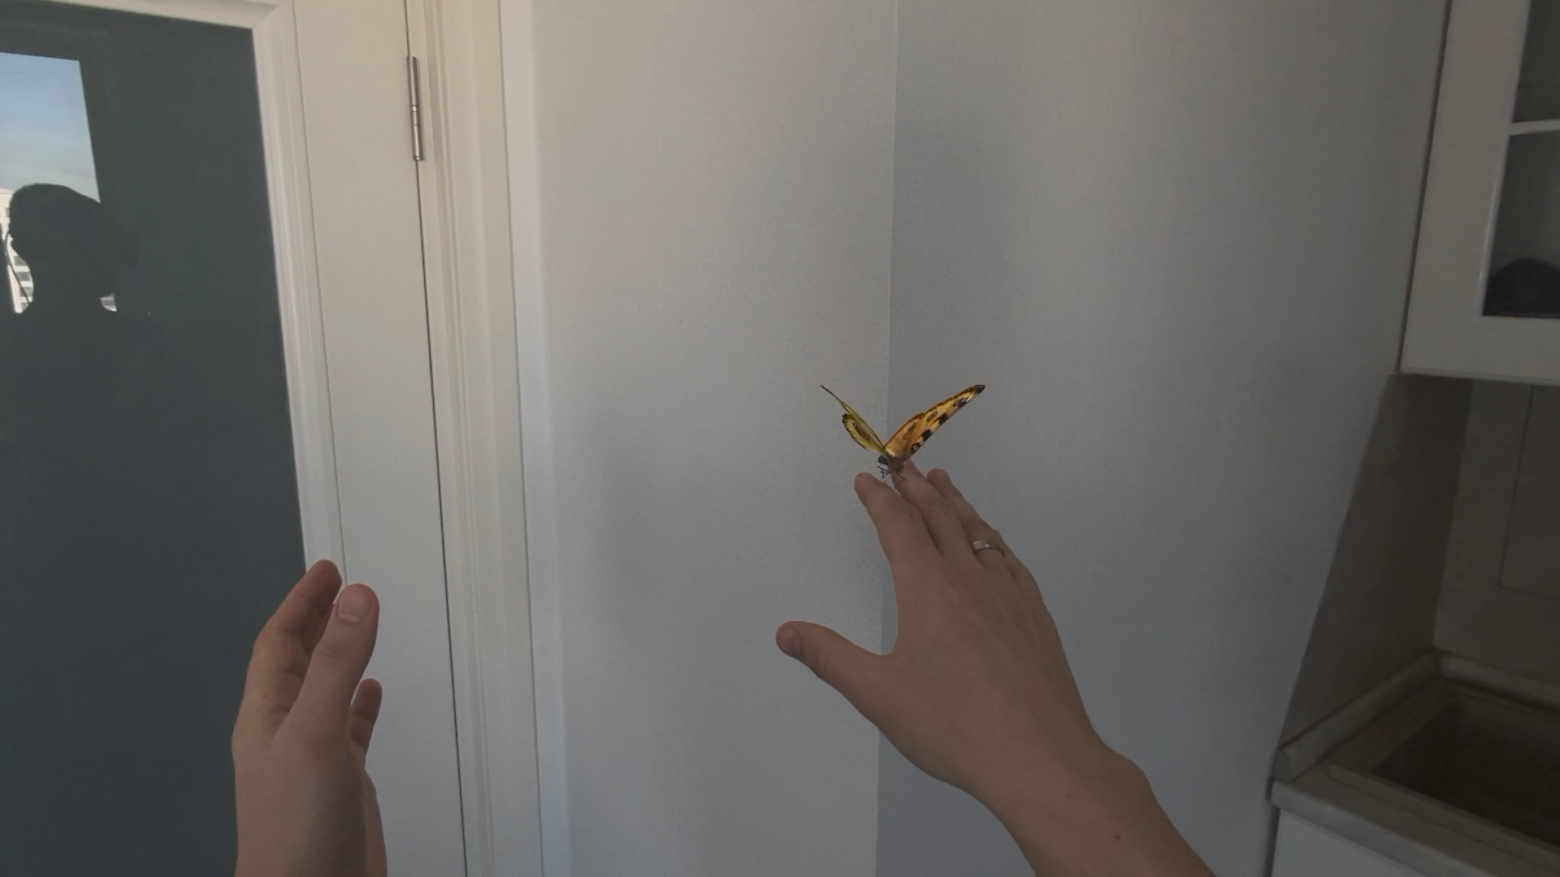 Отслеживание рук в приложении Encounter Dinosaurs, бабочка садится на руку